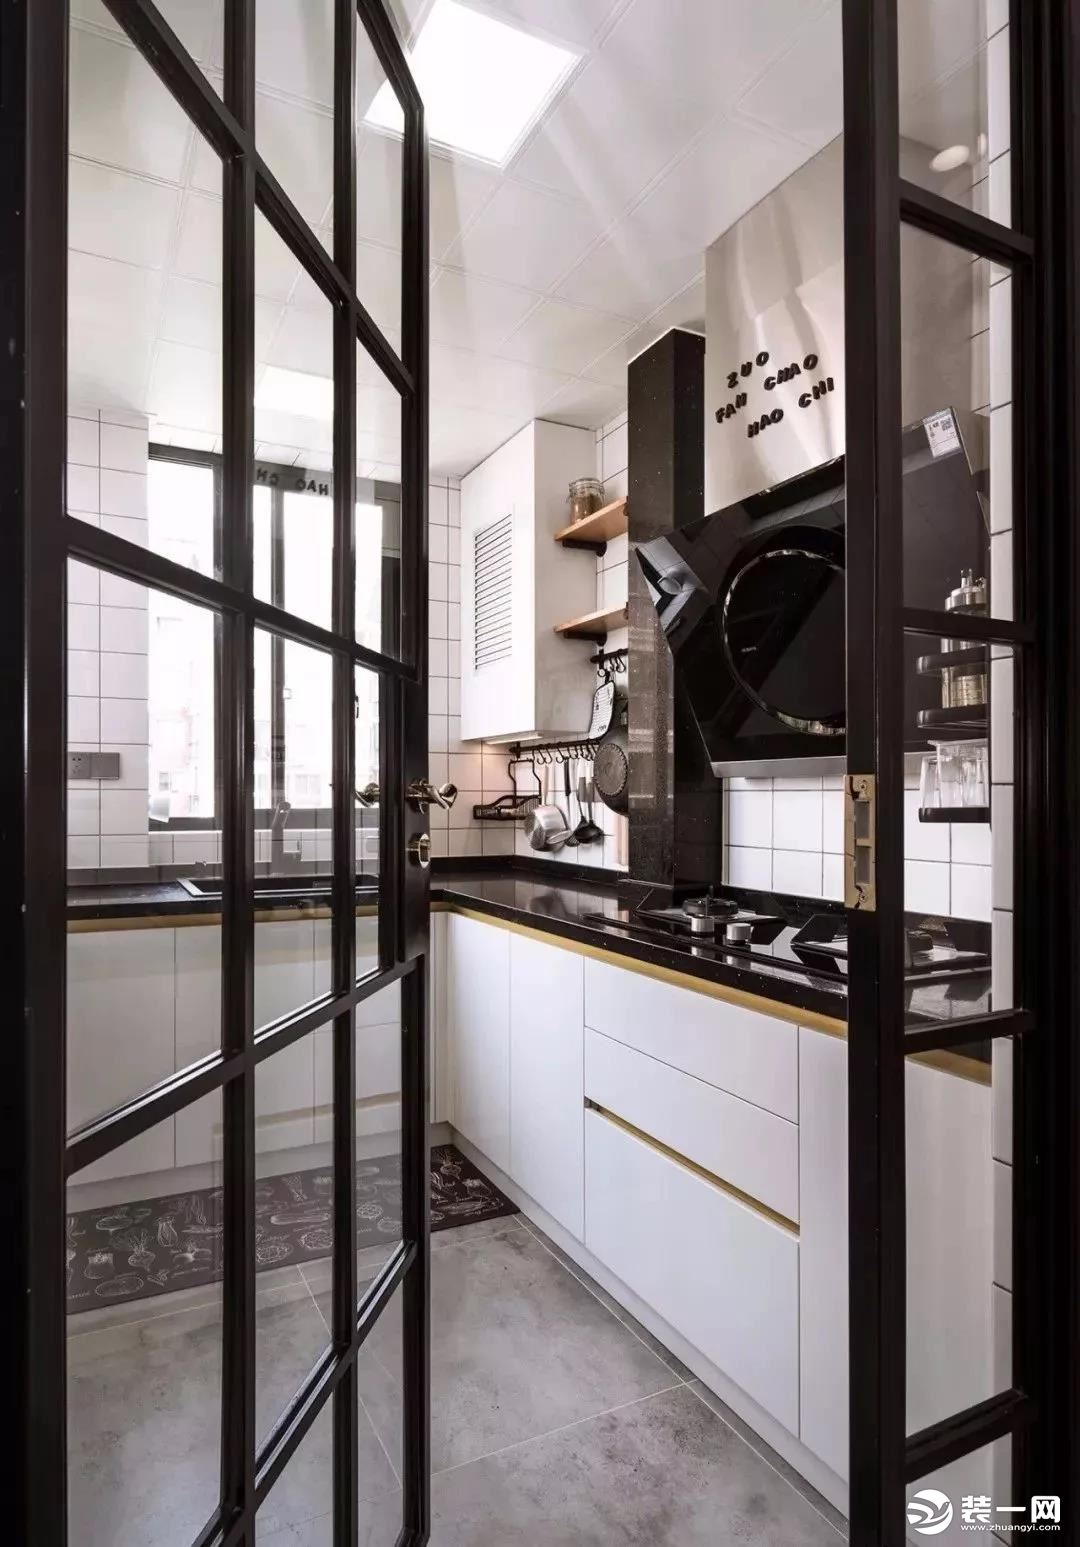 厨房与餐厅用黑框玻璃门隔开，透明隔断，有助于延伸空间视觉感。